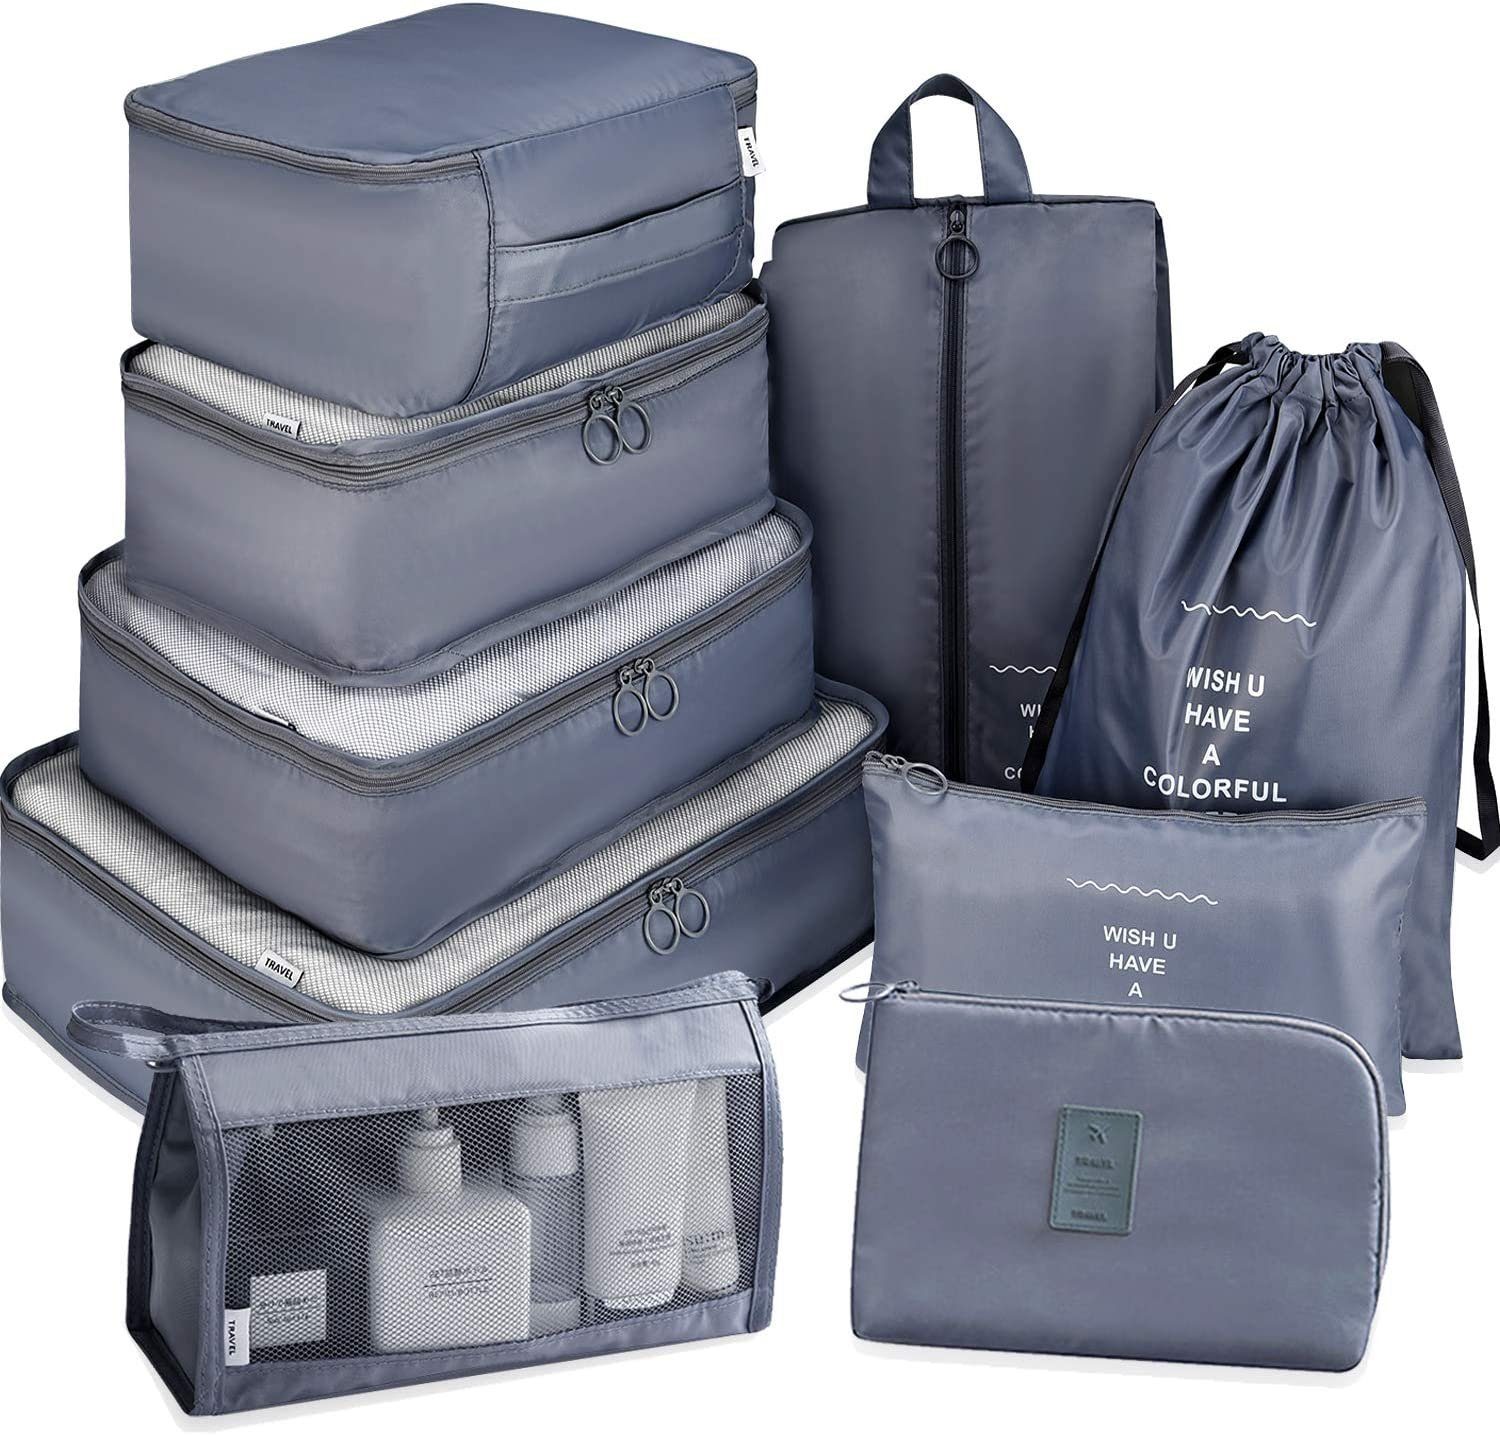 Koffer Organizer Set 9-Teilig Packing Cubes Kofferorganizer travel  Reisetasche.